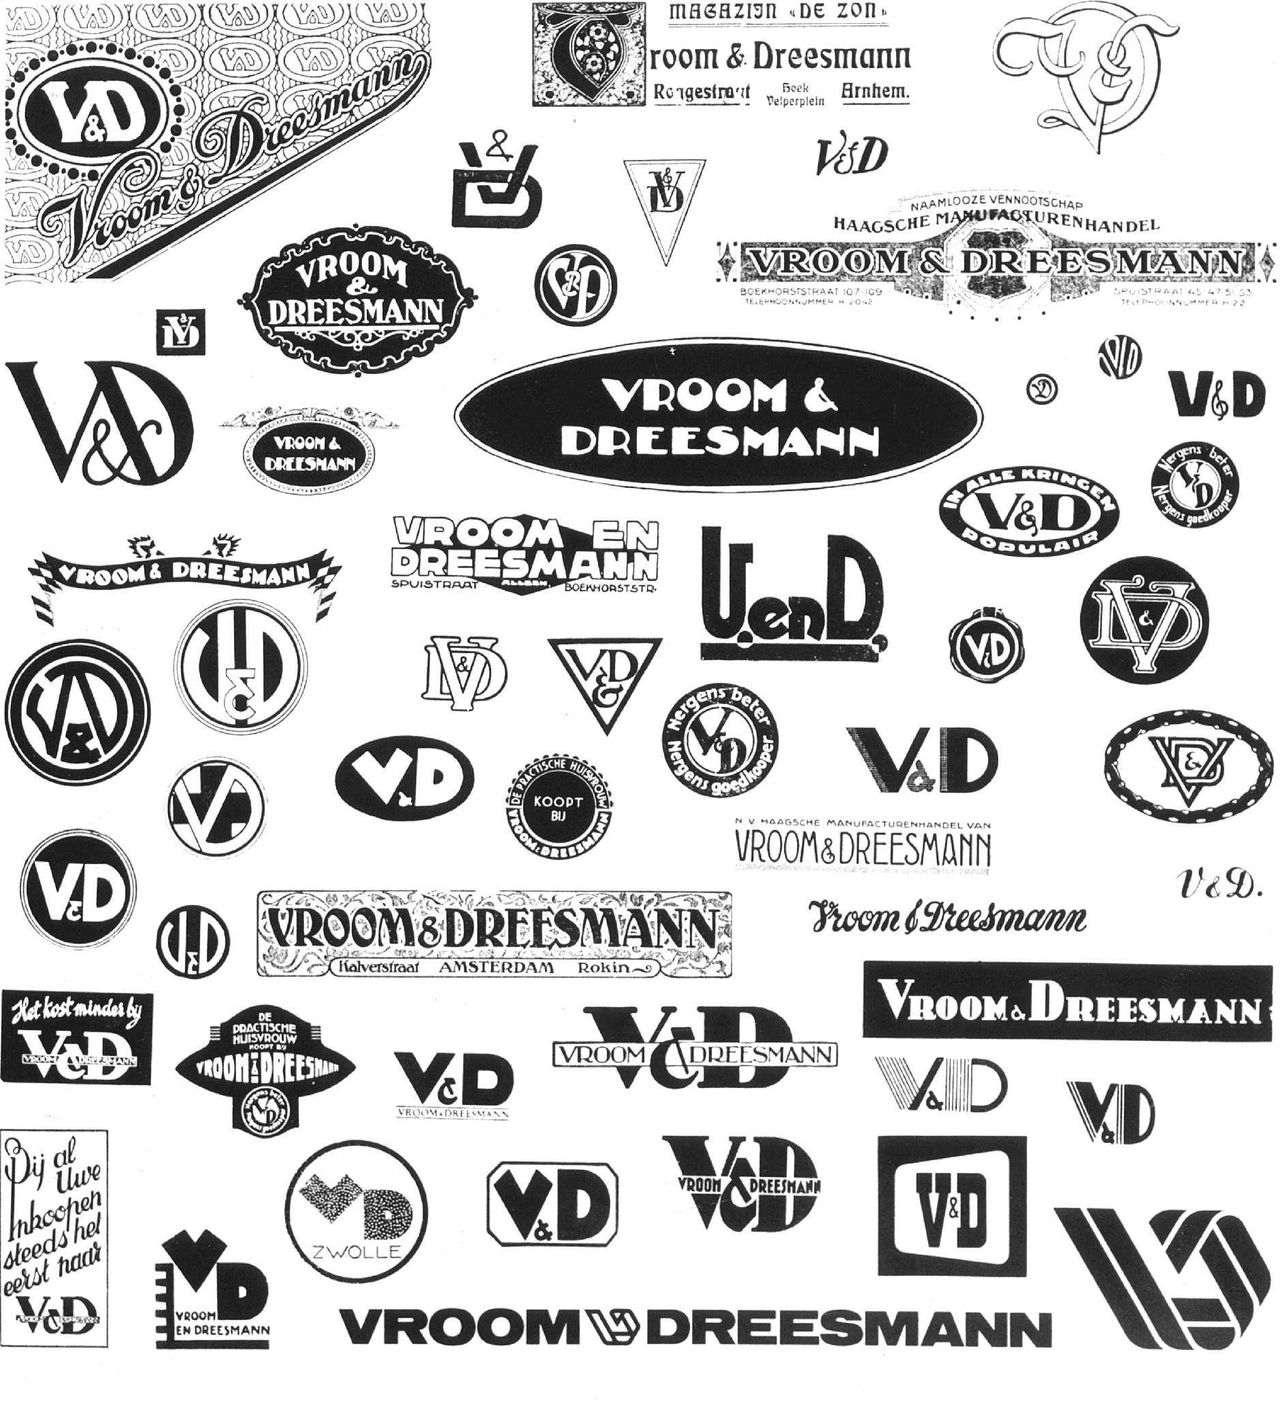 Logo van de V&D door de jaren heen.